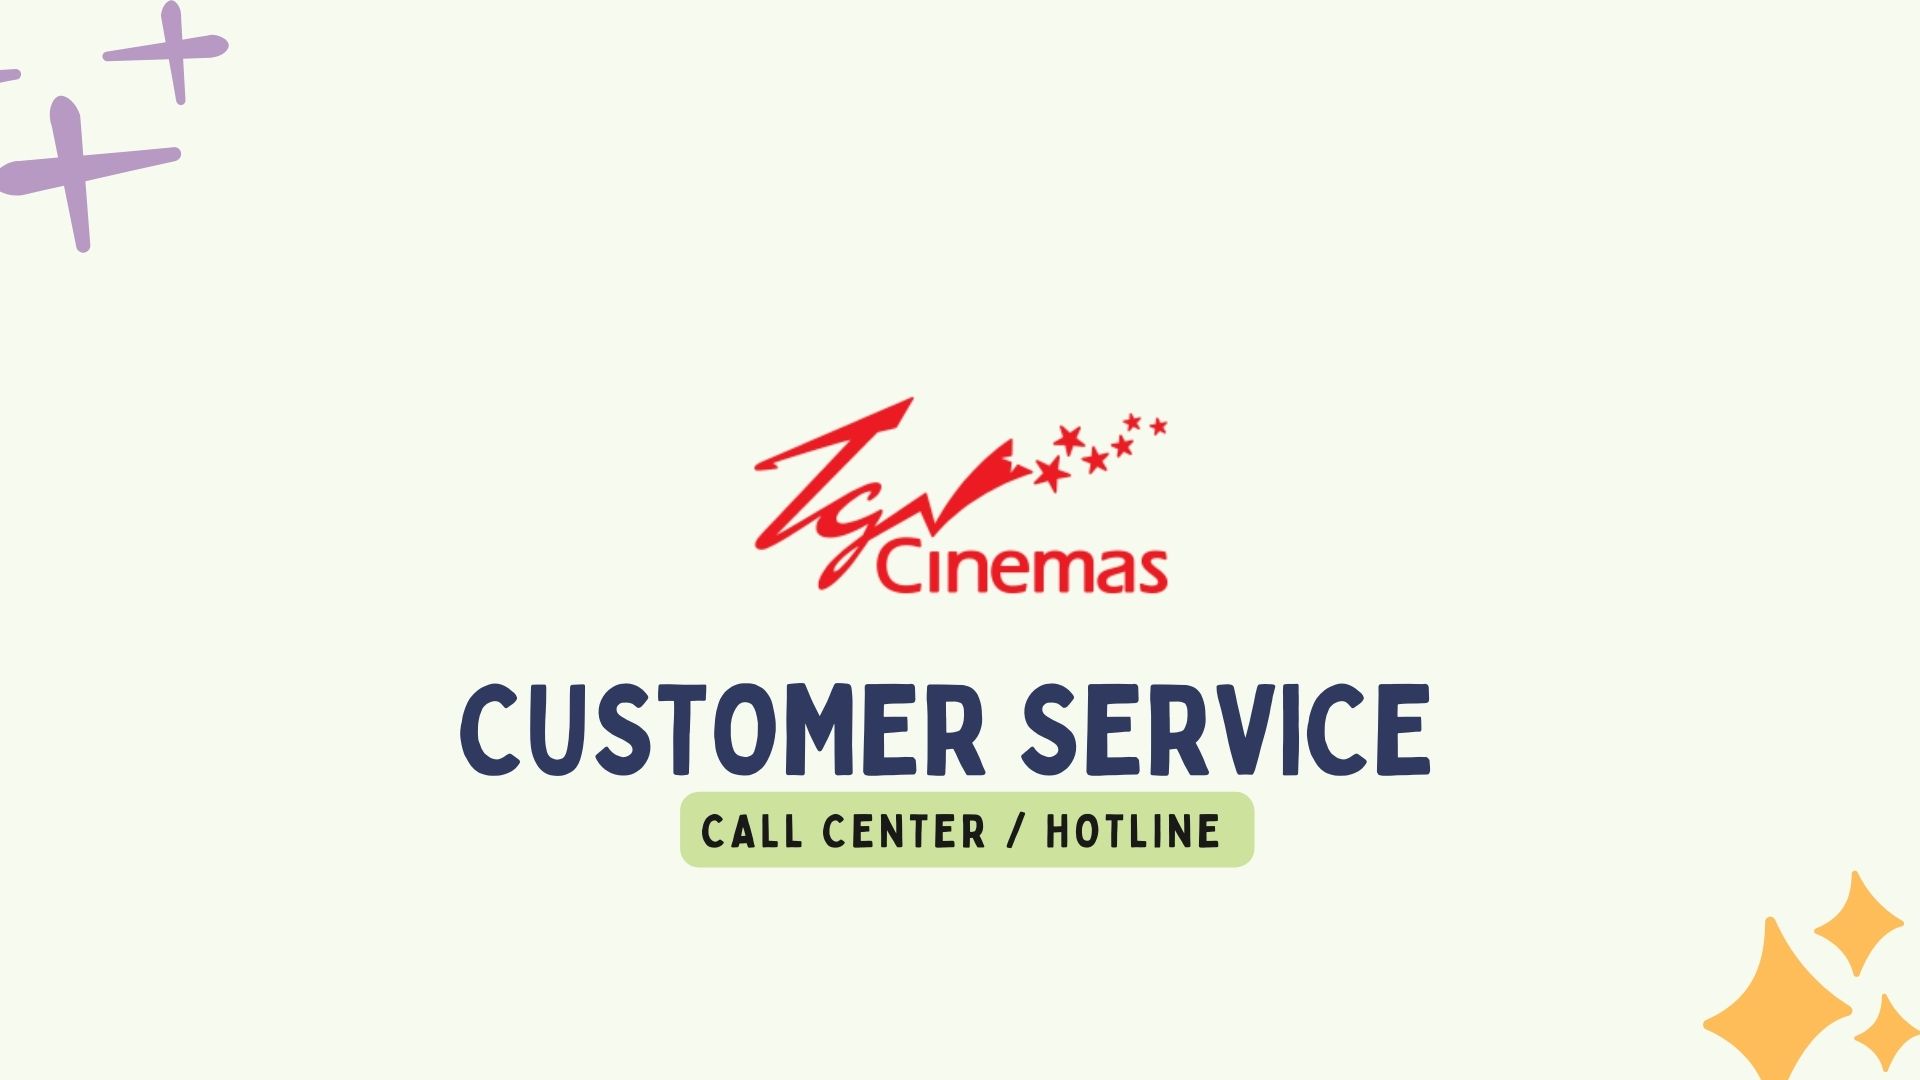 TGV Cinema Customer Service